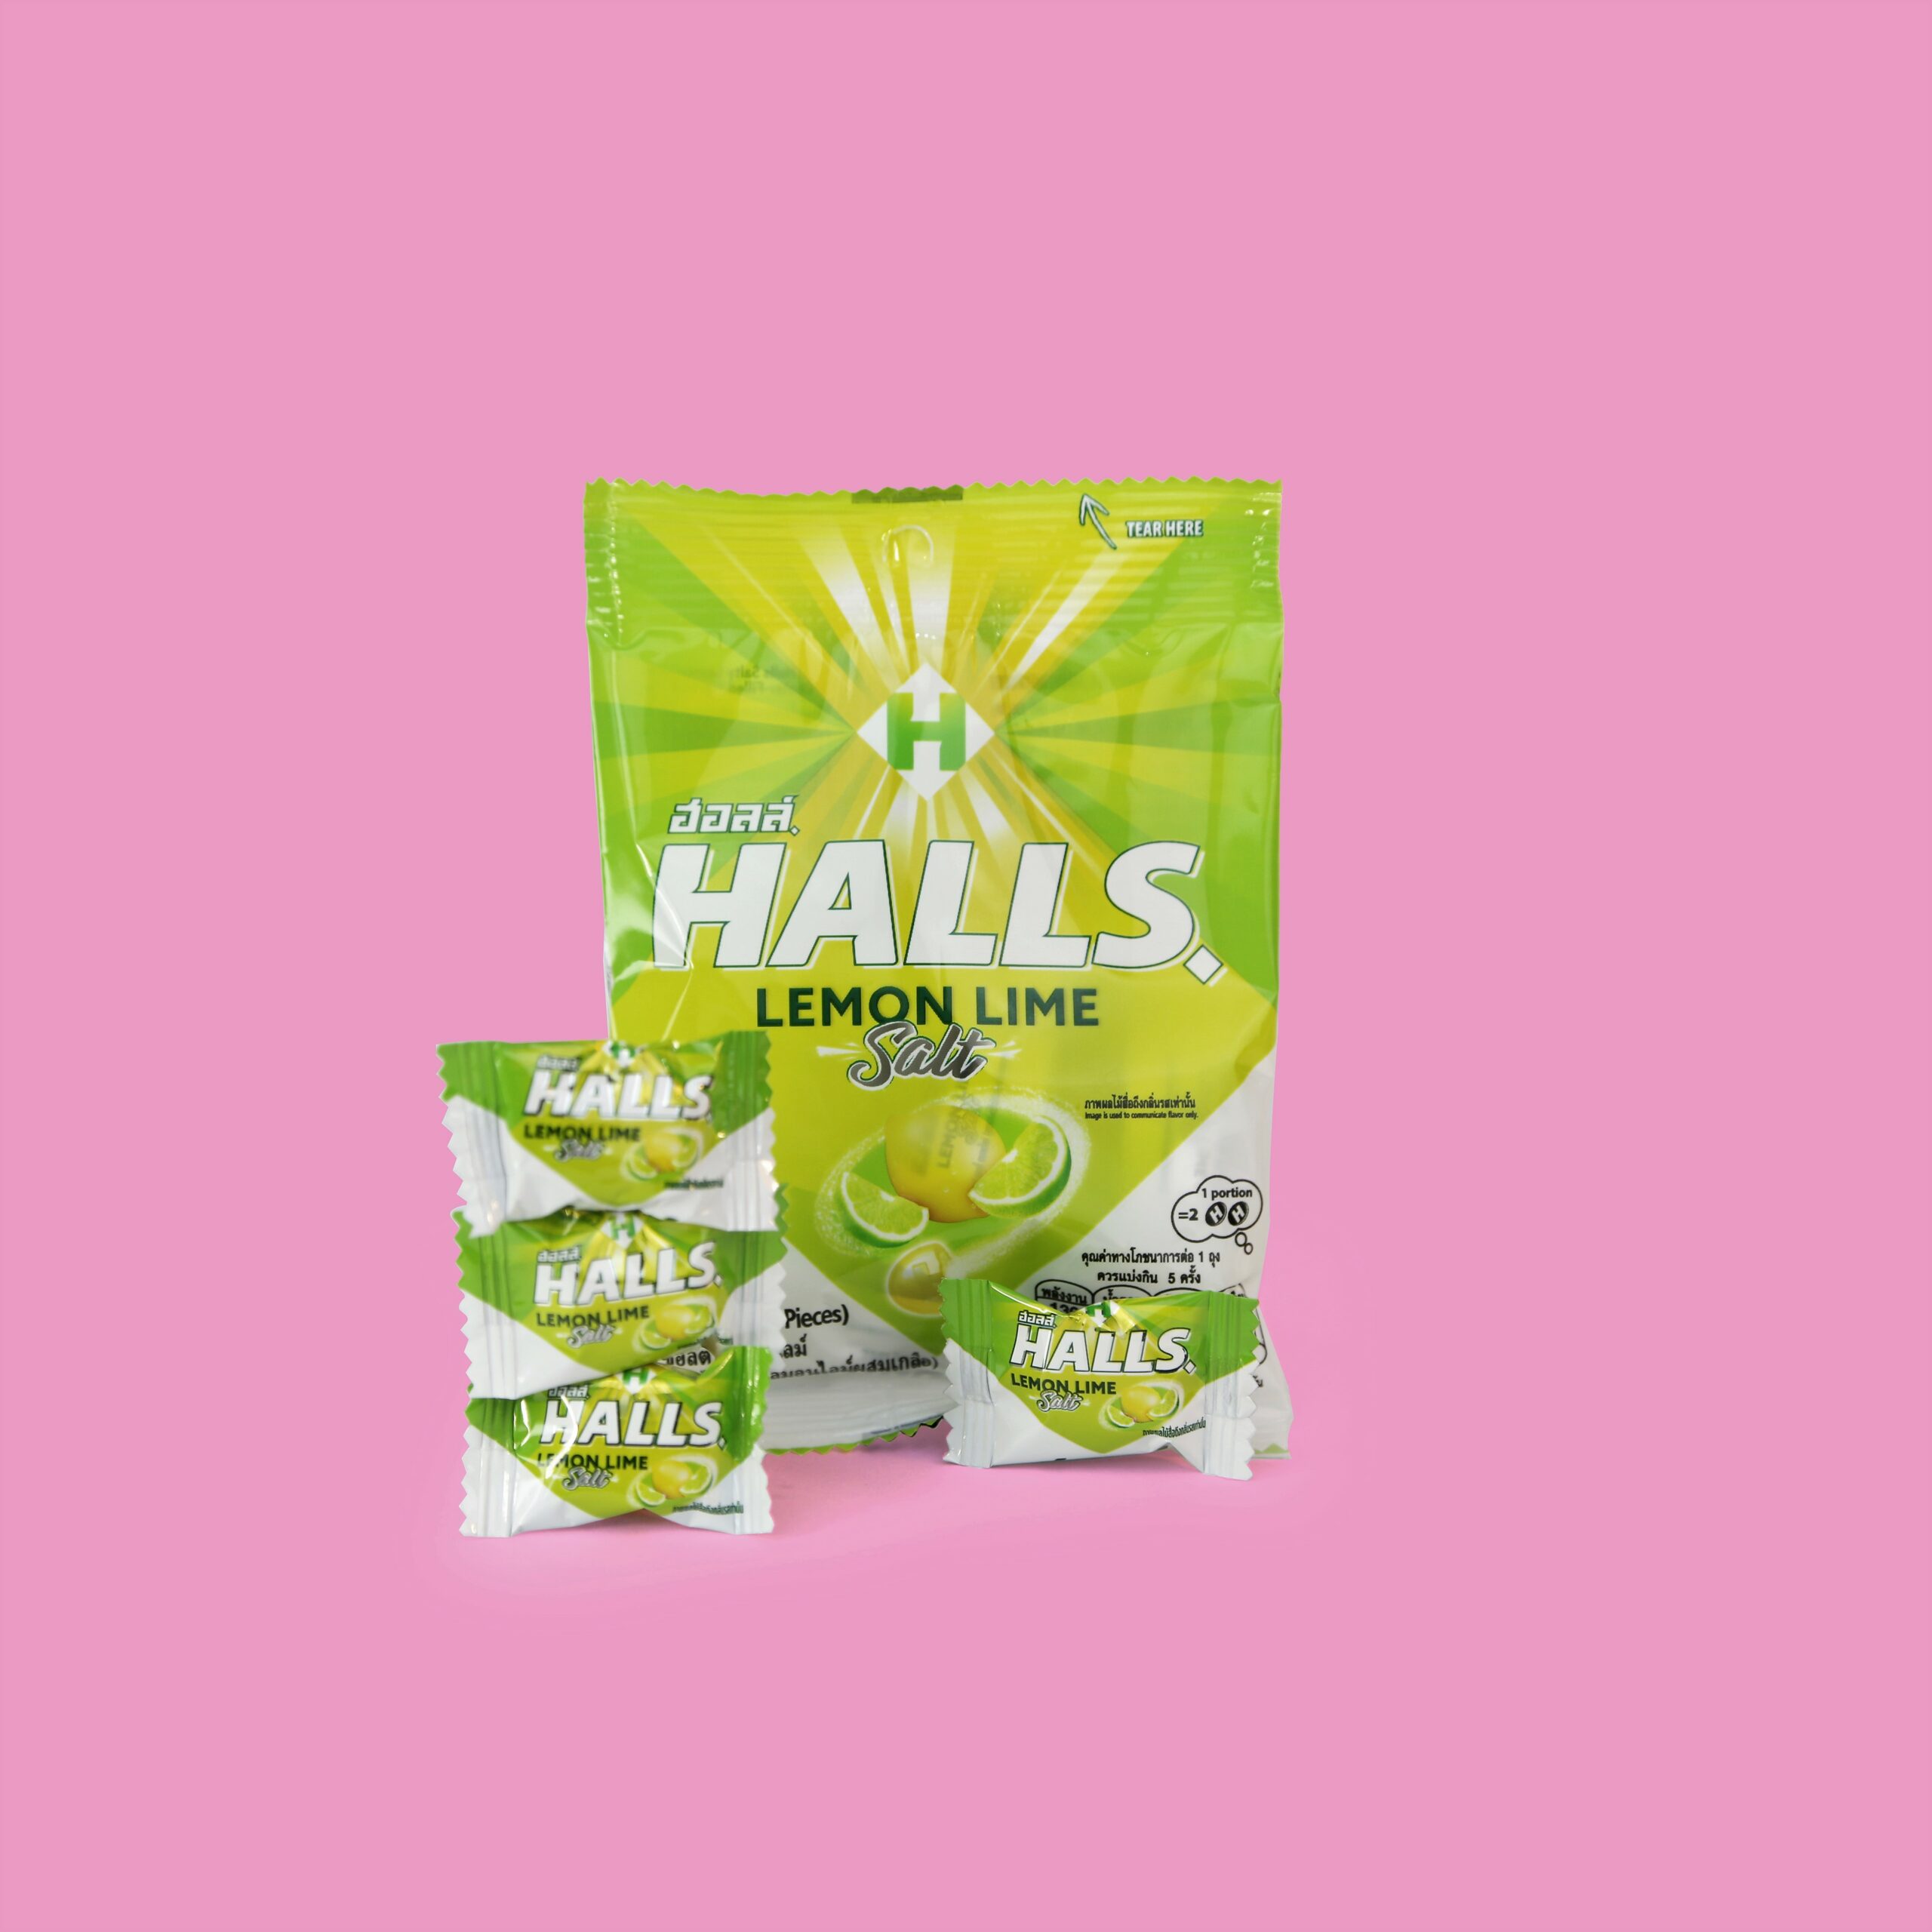 Halls lemon lime salt candy. Sold in Thailand only